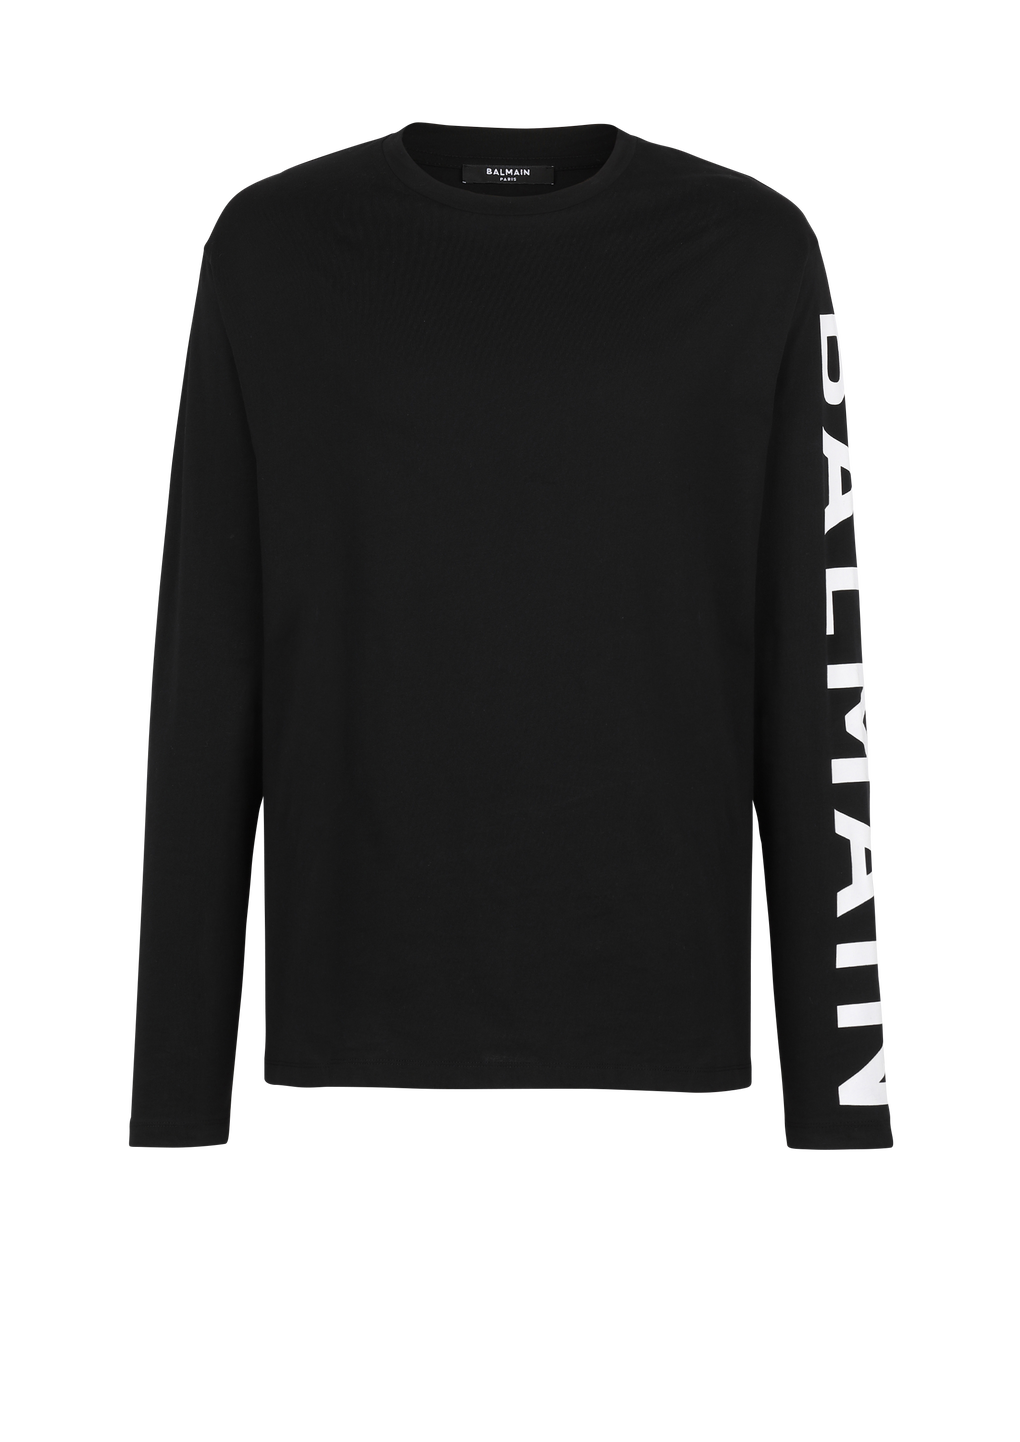 T-shirt in cotone a maniche lunghe con logo Balmain sulla manica, nero, hi-res